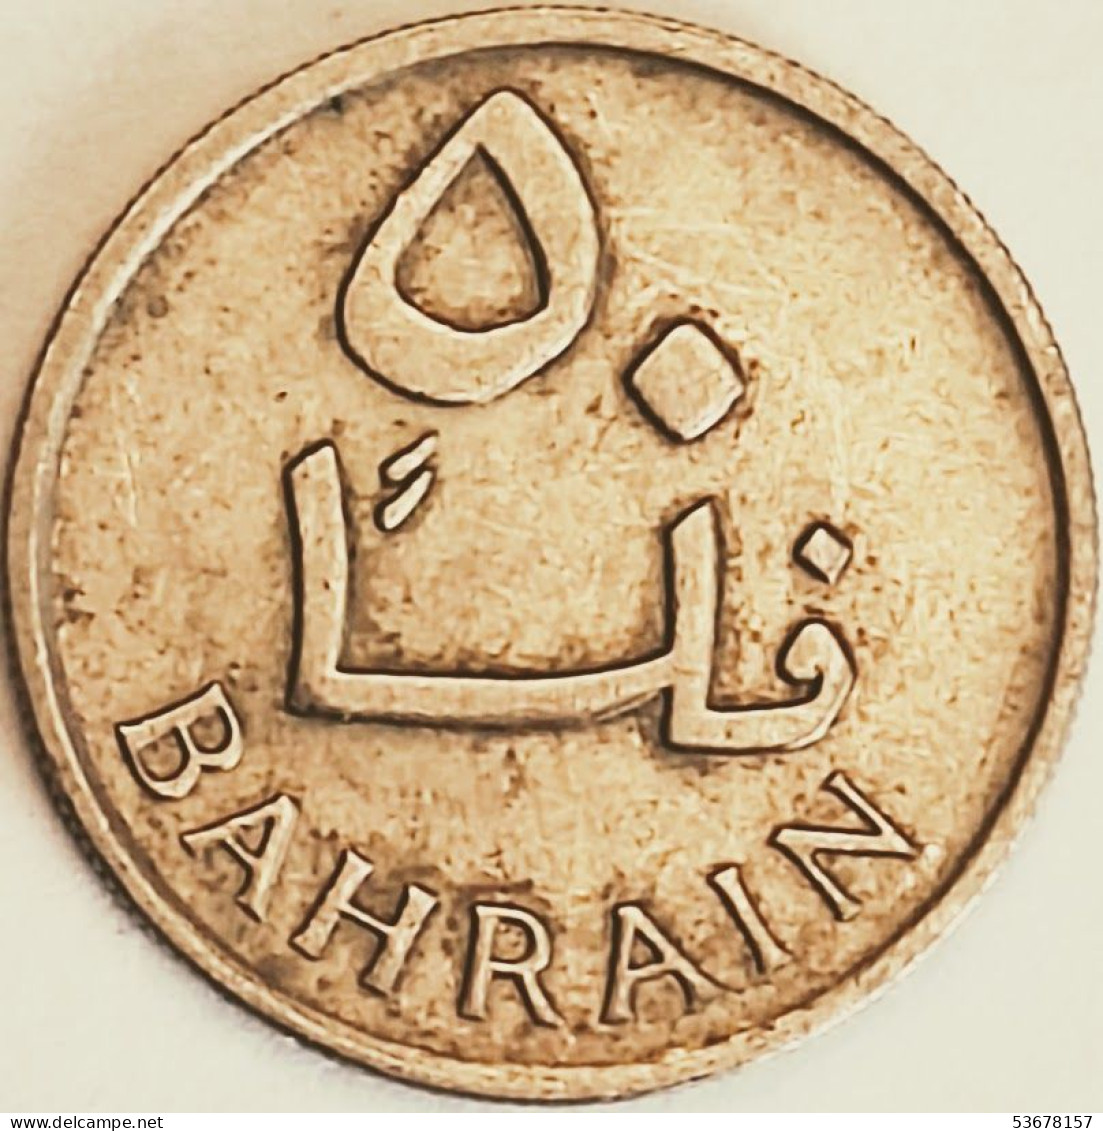 Bahrain - 50 Fils AH1385-1965, KM# 5 (#3062) - Bahrein